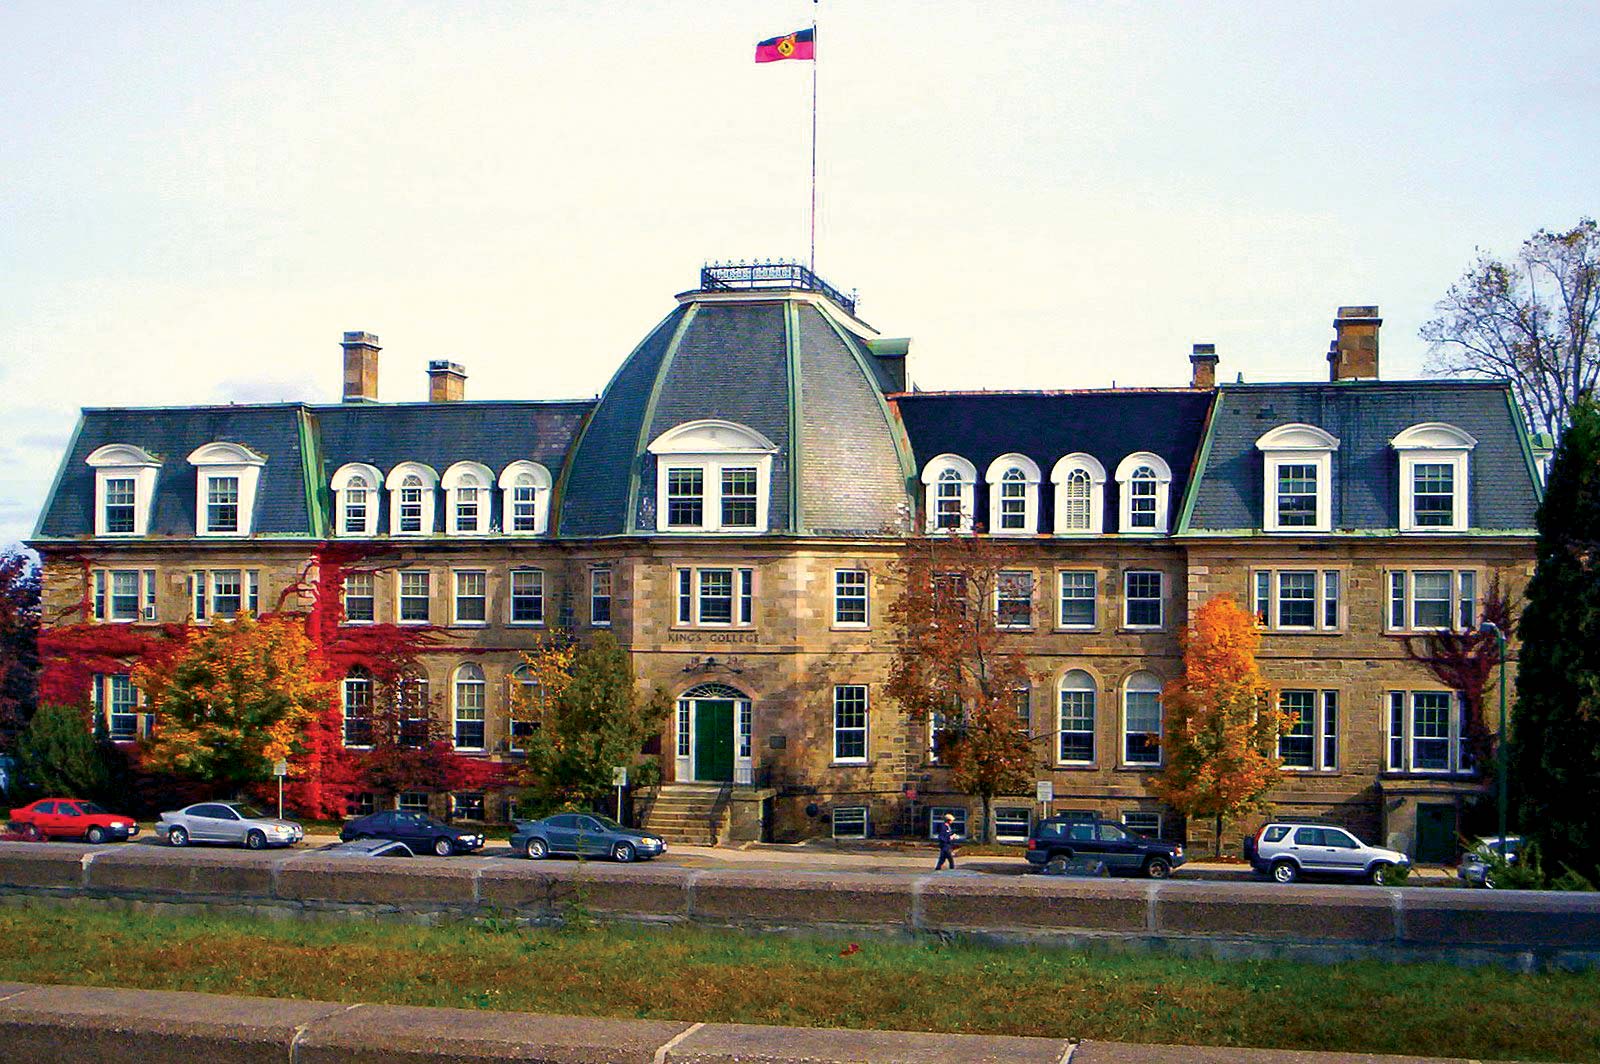 University of New Brunswick (UNB)